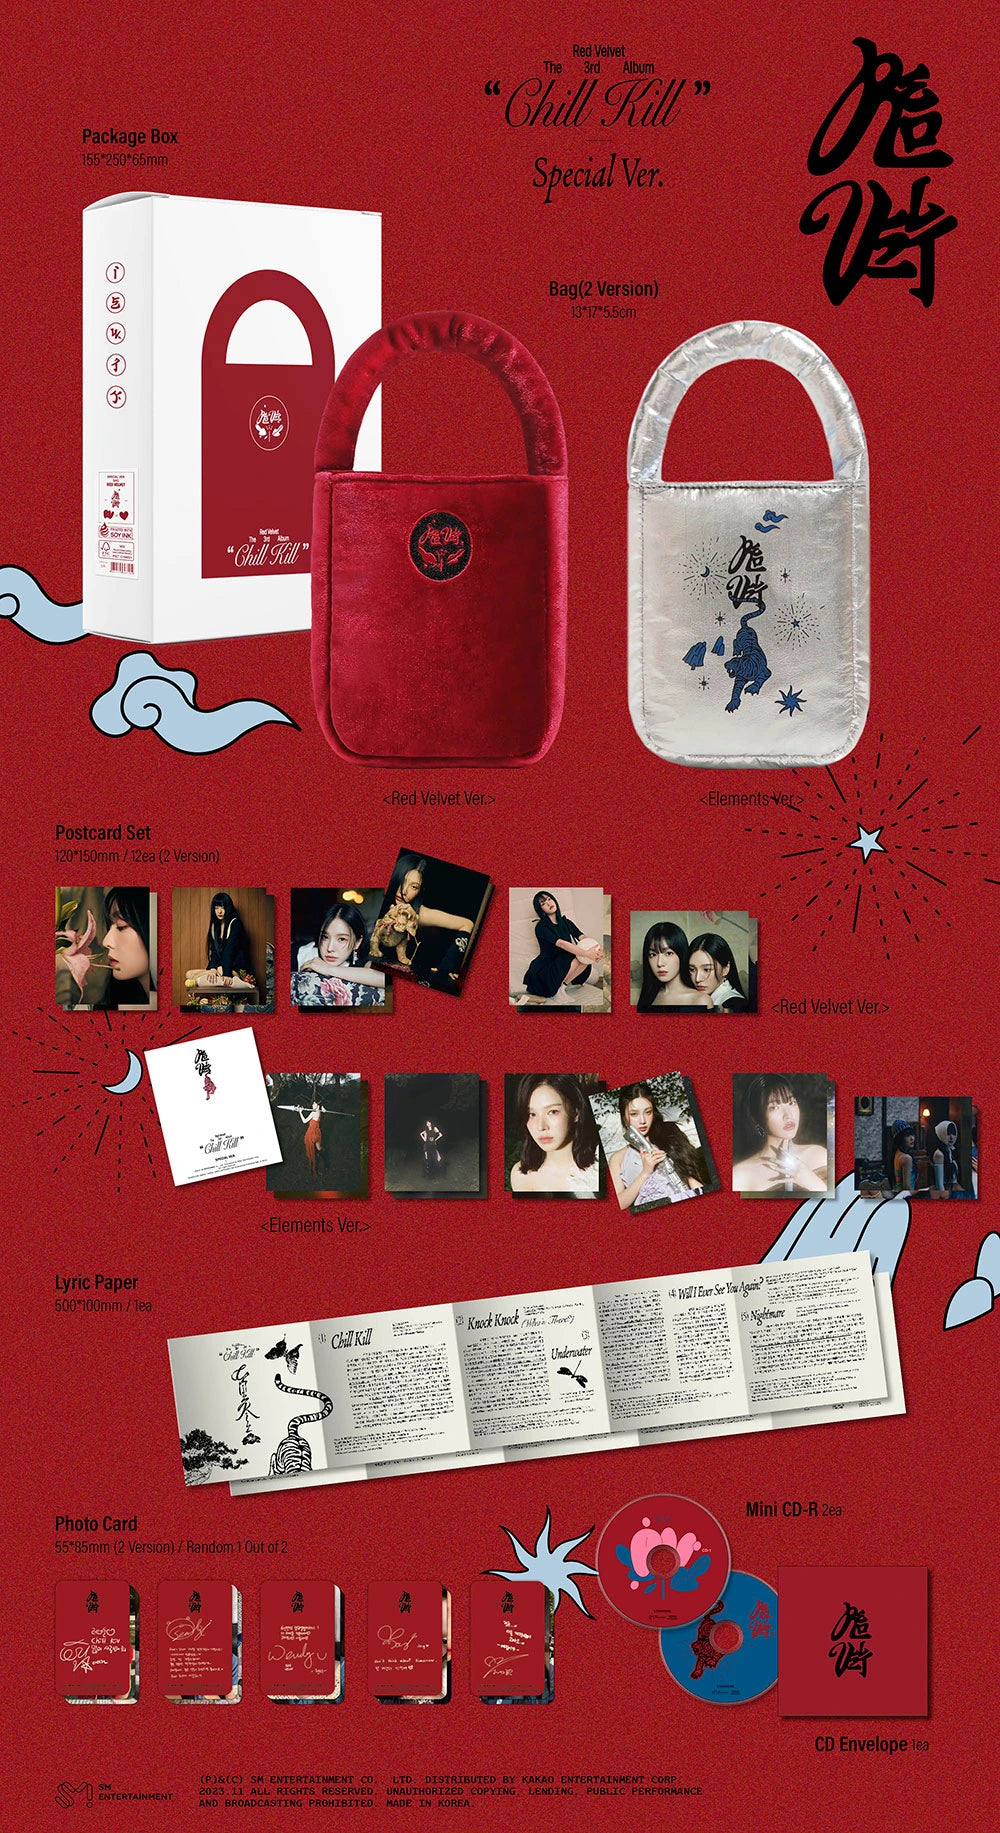 Red Velvet - Chill Kill (3rd Full-Length Album) Bag Ver. Limited Edition